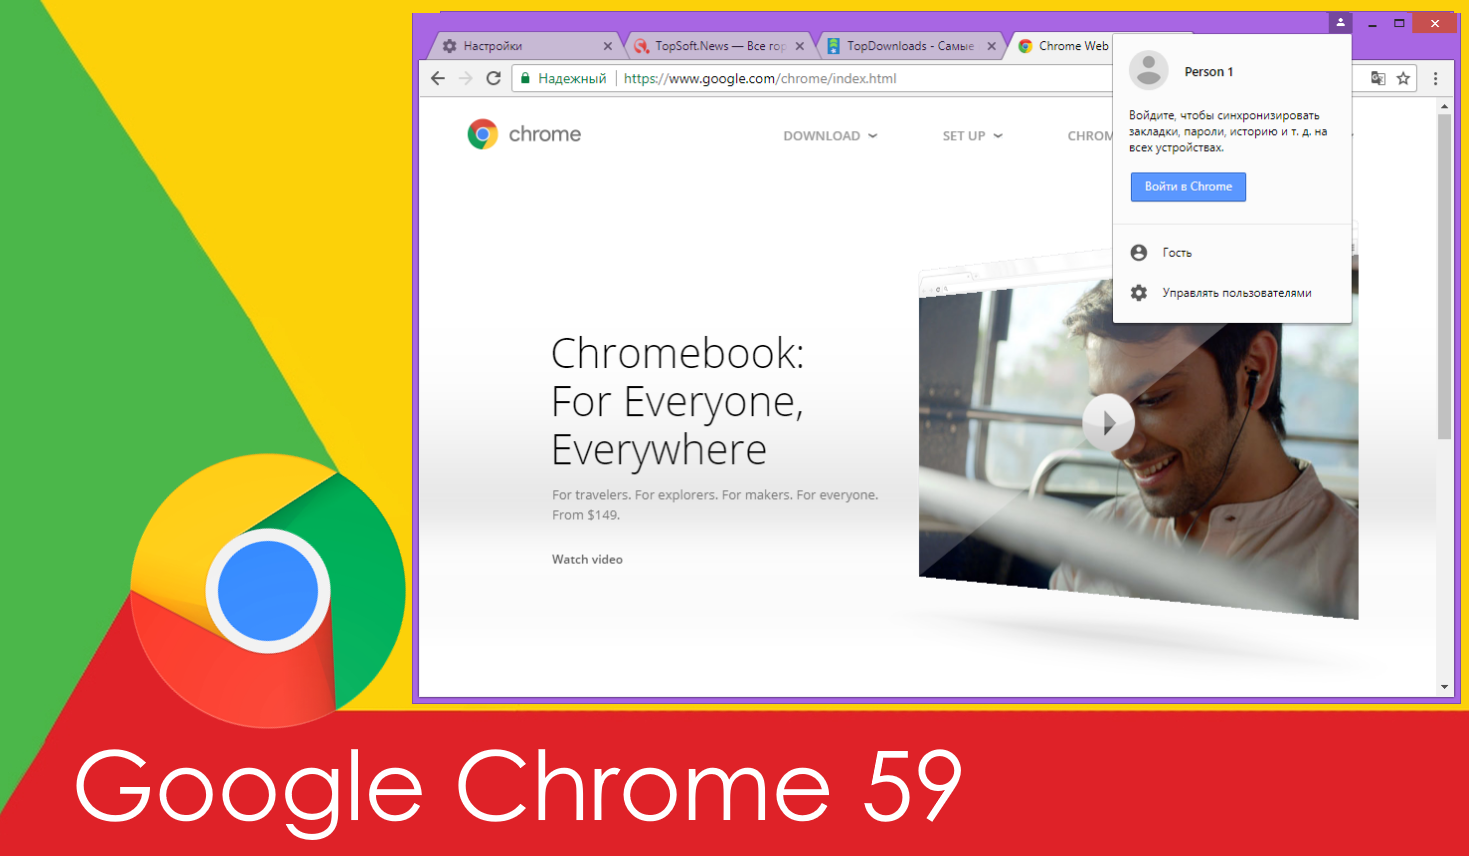 Chrome 59